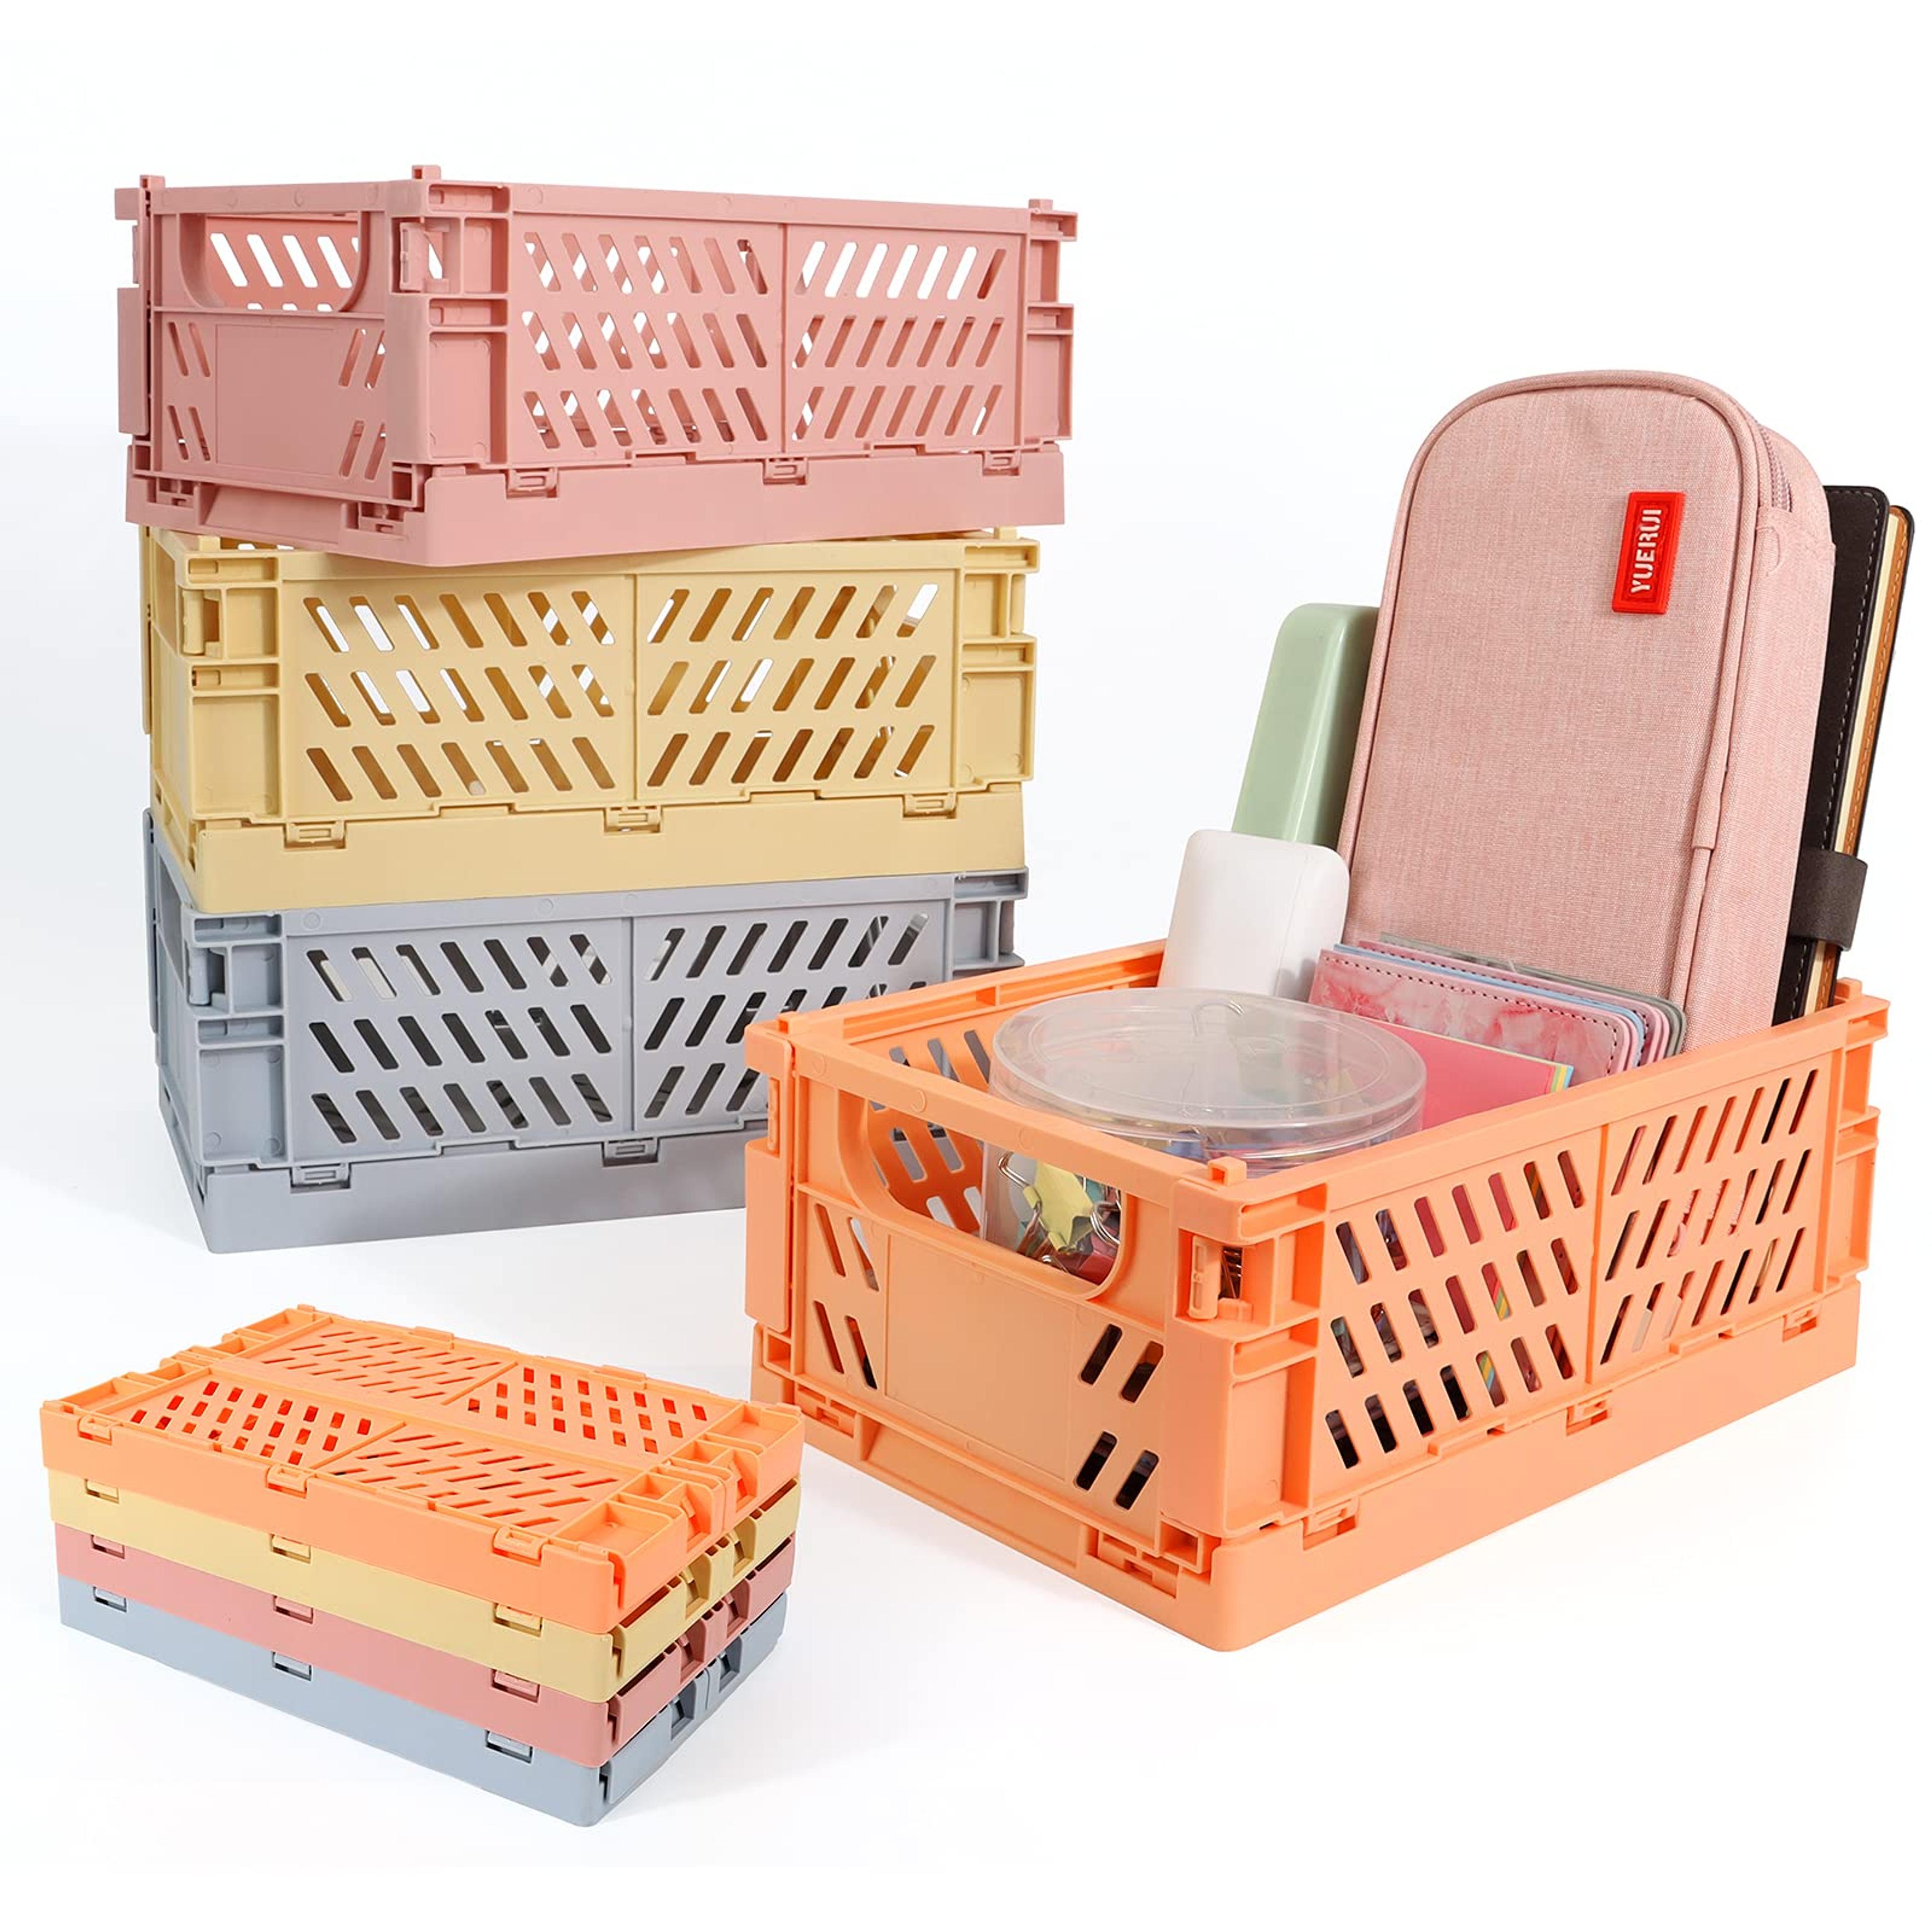 GLCSC 4-Pack Storage Baskets Plastic for Shelf Home Kitchen Storage Bin Organizer, Stacking Folding Storage Baskets for Classroom Bedroom Bathroom Office